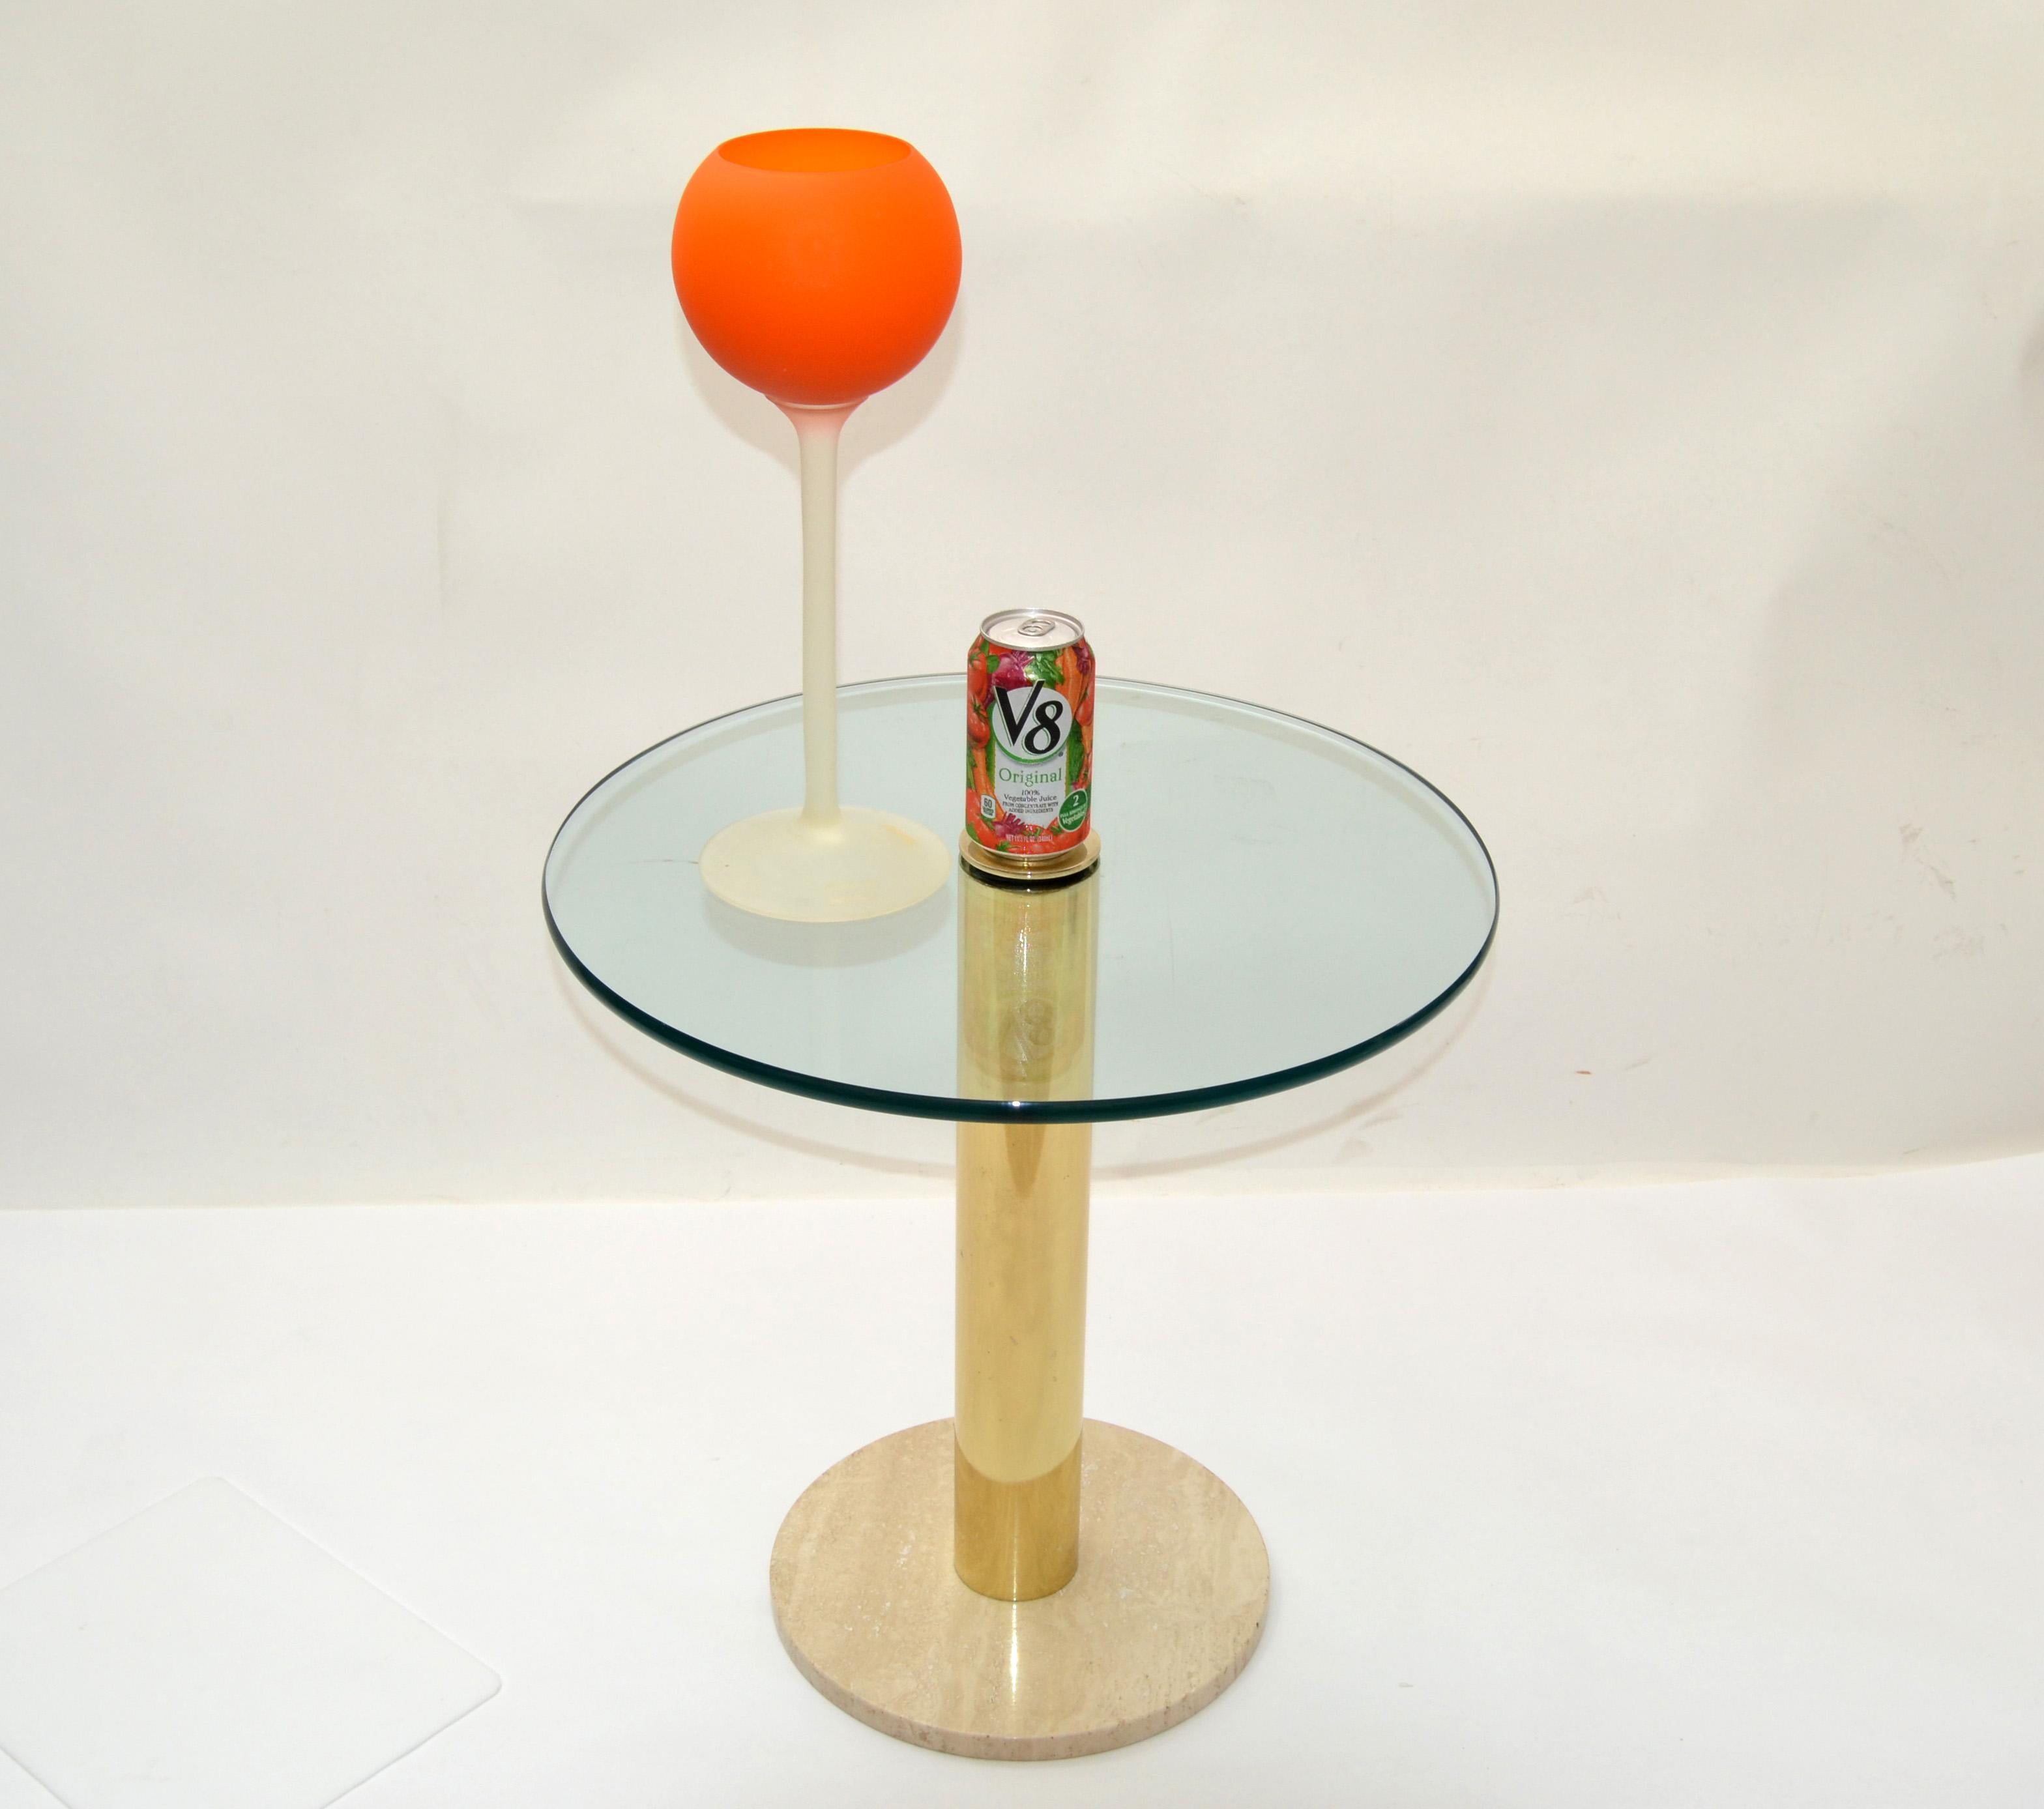 Carlo Moretti für Rosenthal Netter Satinierte Glasvase oder Weinglas-Skulptur in orangerot & mattiertem Scavo-Glas. 
Der Sockel trägt noch das Original Label.
Diese wurden in der Anfangszeit, etwa 1960-1969, hergestellt.
 